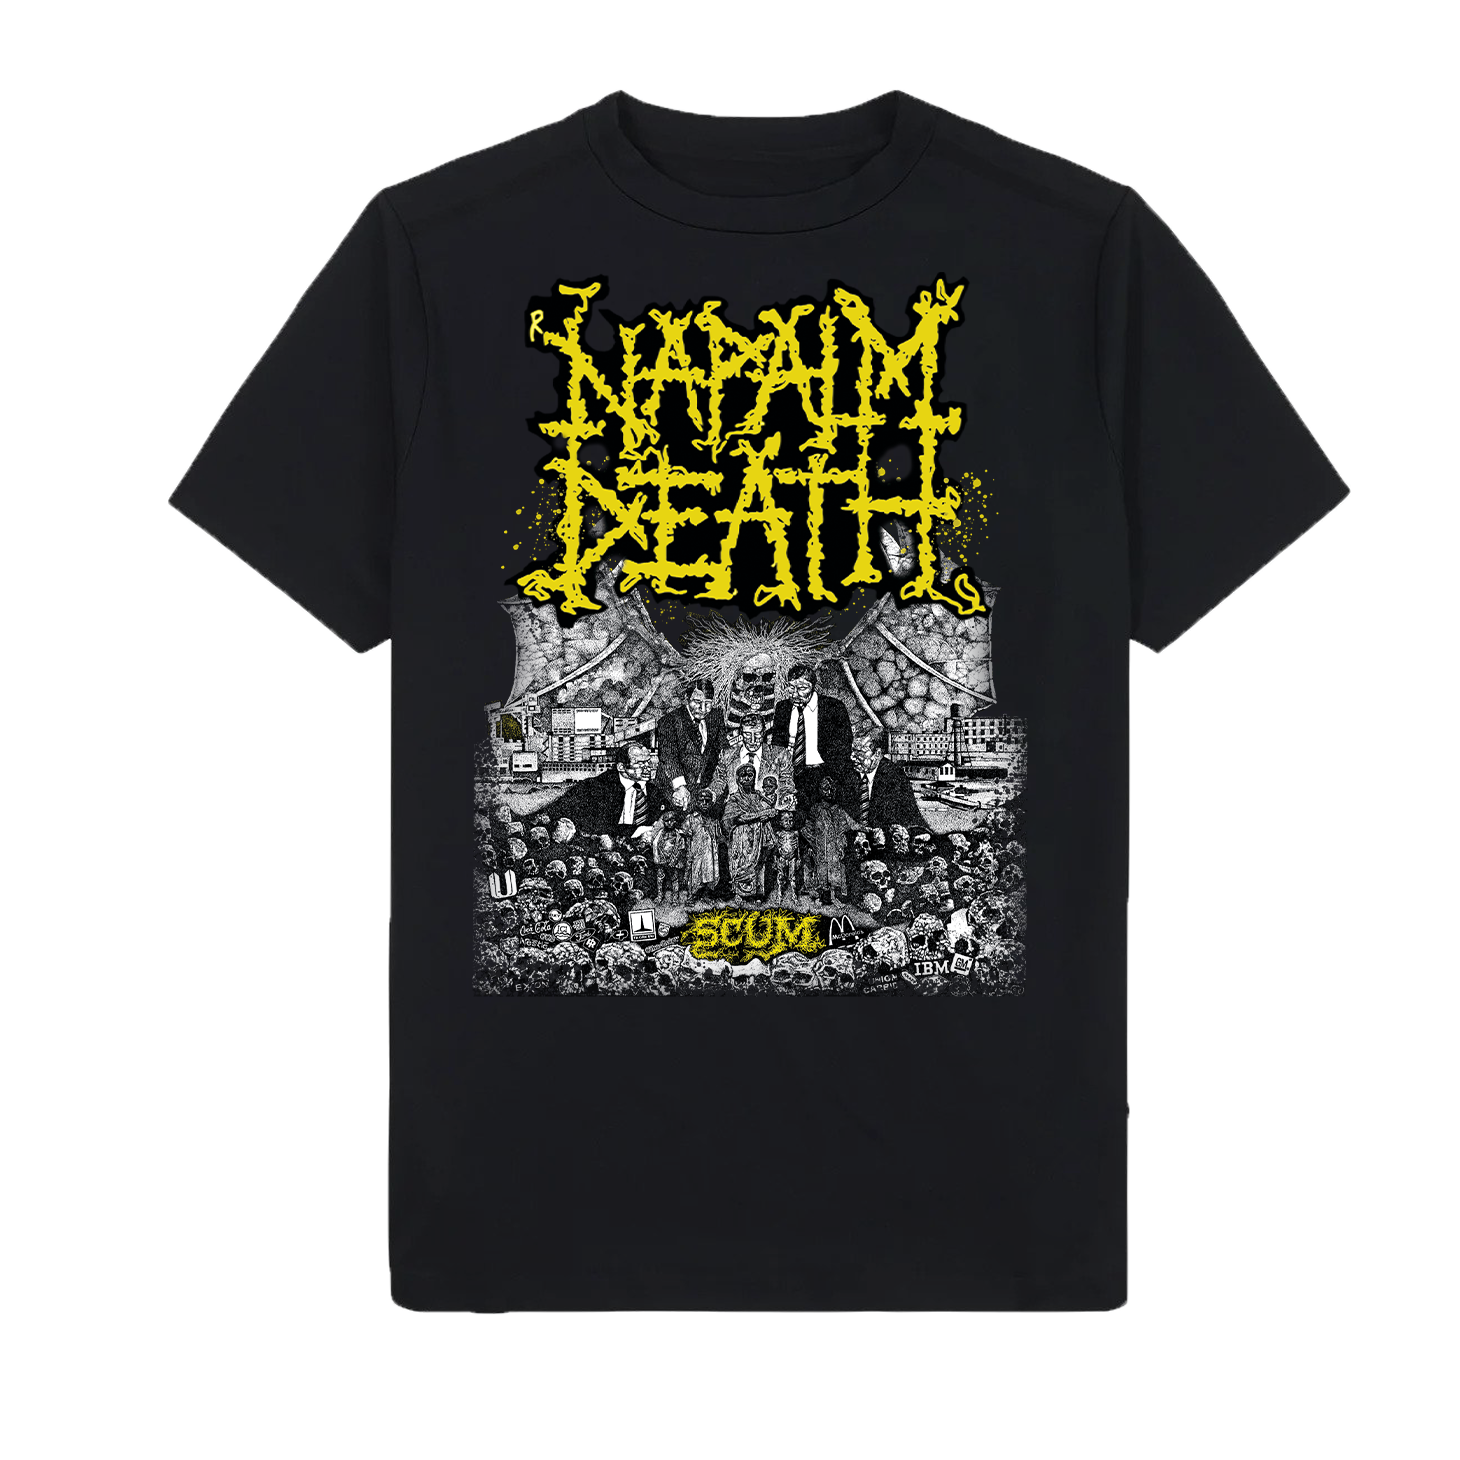 Napalm Death "Scum Classic" T shirt